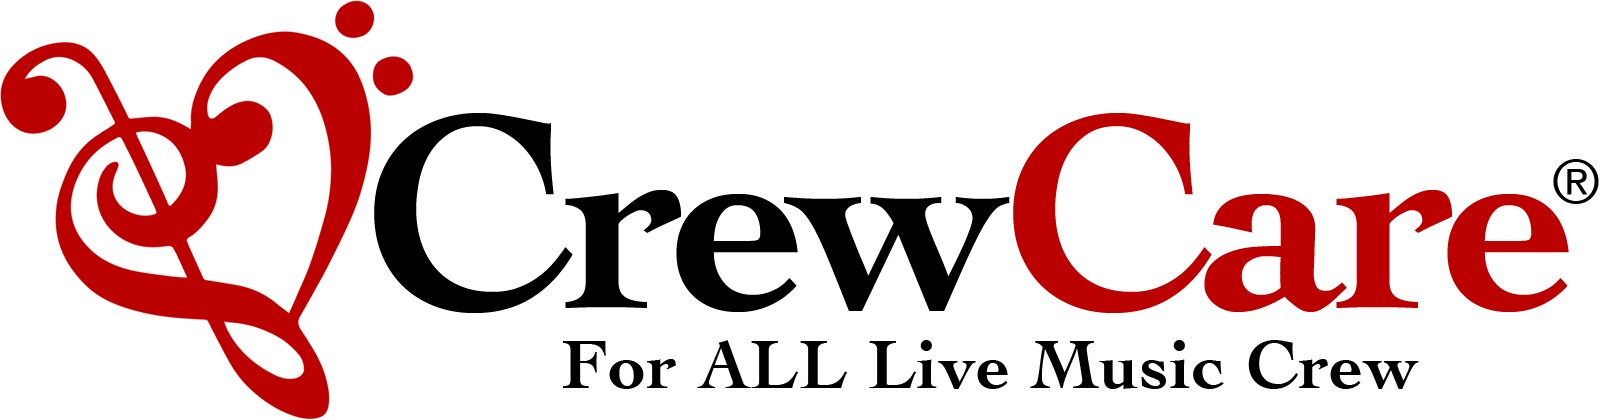 CrewCare-logo (1).png